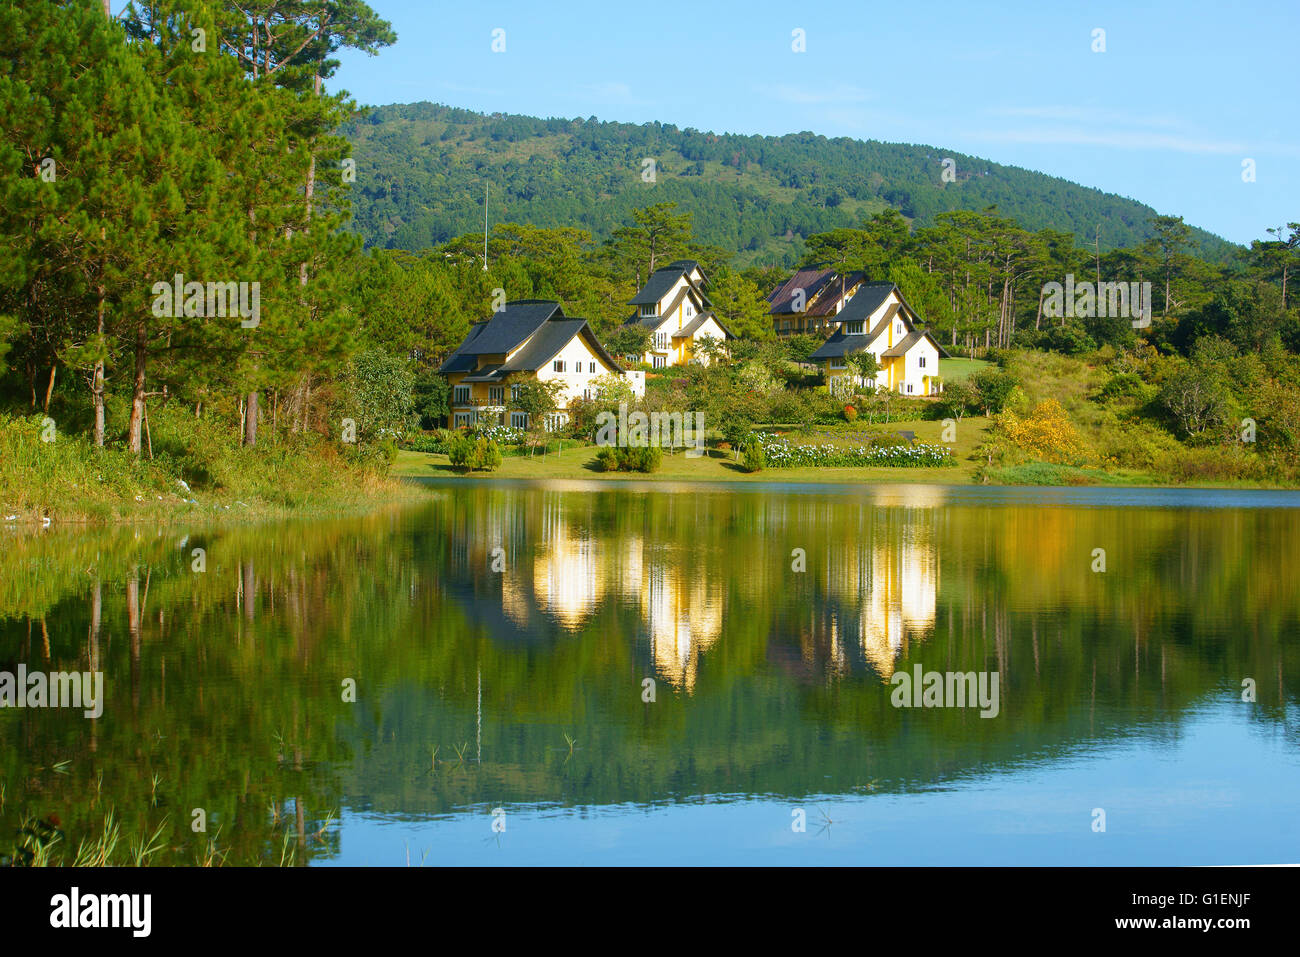 Beau paysage à Dalat village, groupe de villas reflètent sur le lac, maison de vacances eco resort entre forêt de pins verts, l'air frais, pu Banque D'Images